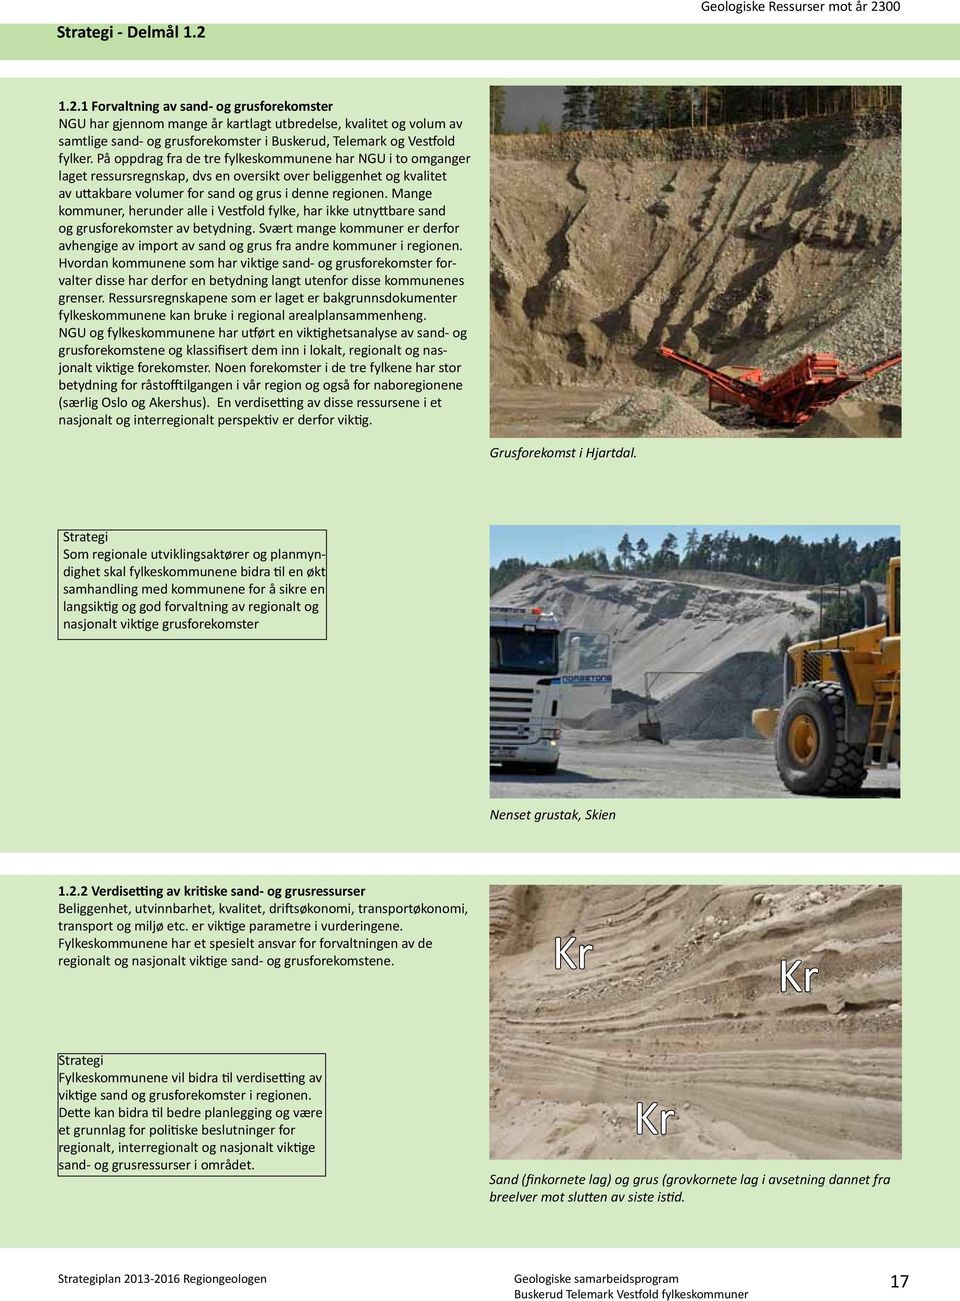 Mange kommuner, herunder alle i Vestfold fylke, har ikke utnyttbare sand og grusforekomster av betydning.